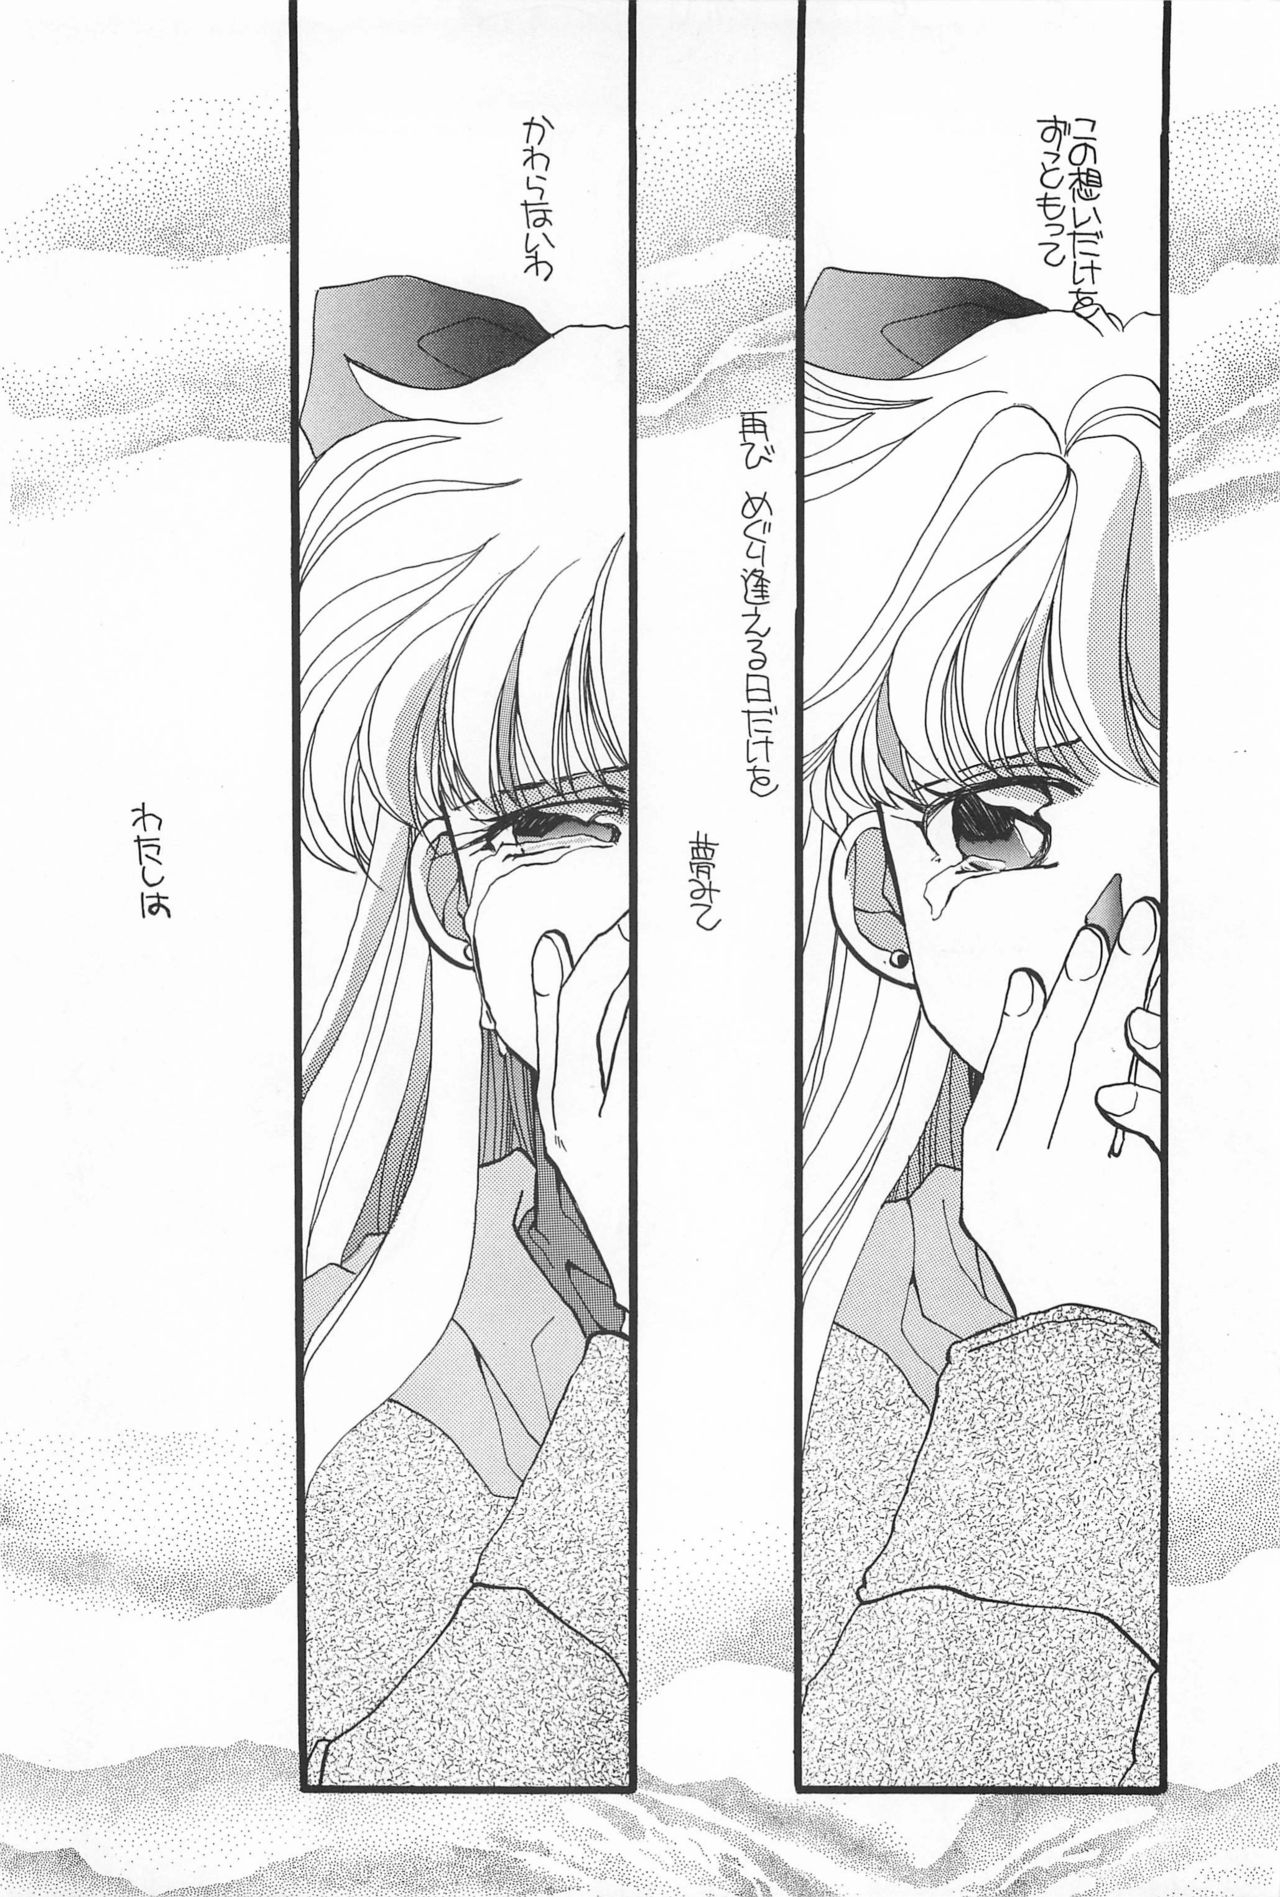 [Hello World (Muttri Moony)] Kaze no You ni Yume no You ni - Sailor Moon Collection (Sailor Moon) 89